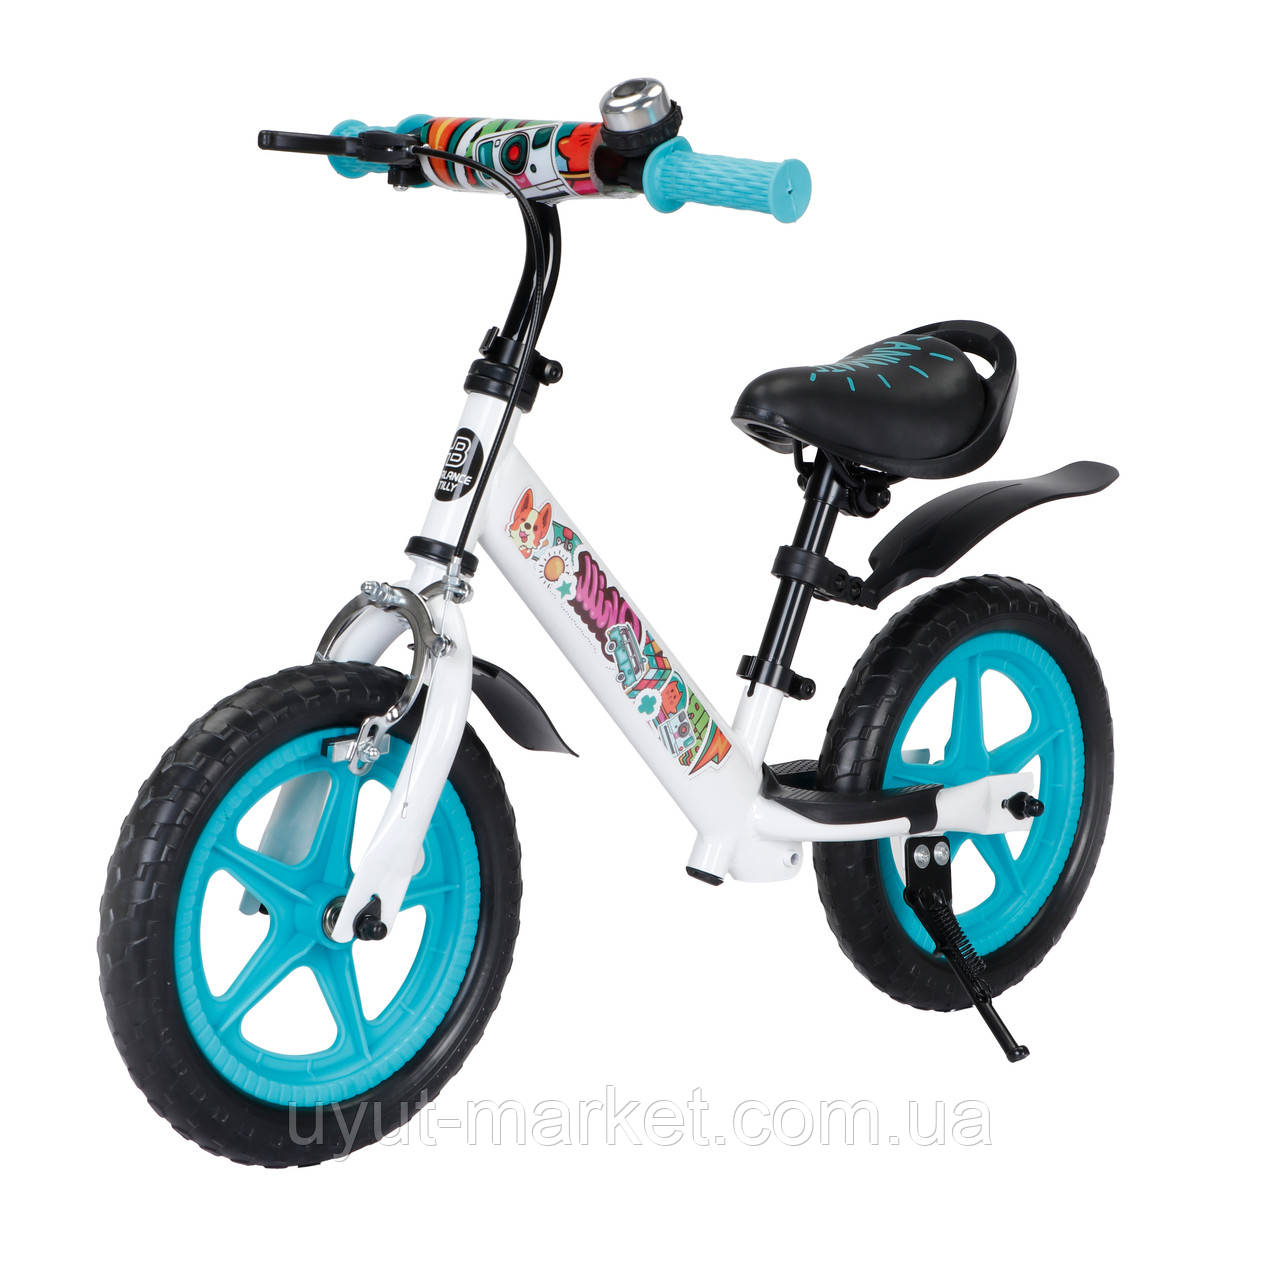 Біговел, велокат 12" від 2-5 років, надувні колеса, ручне гальмо, дзвінок BALANCE TILLY Animate T-212526